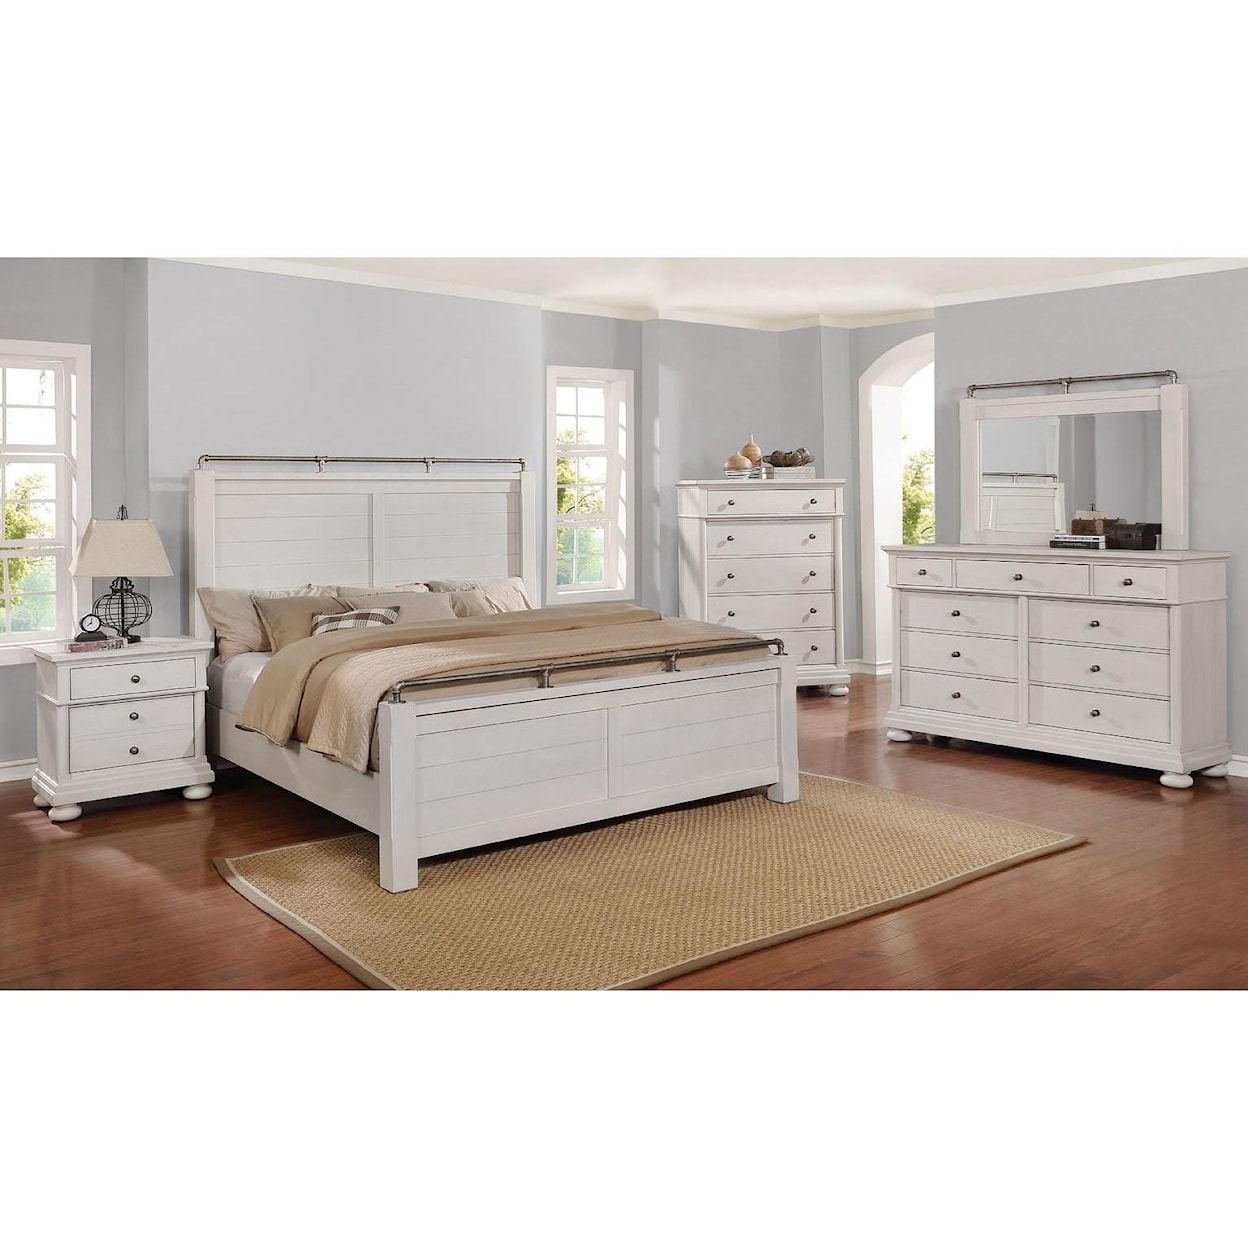 Avalon Furniture Bellville - White Dresser Mirror